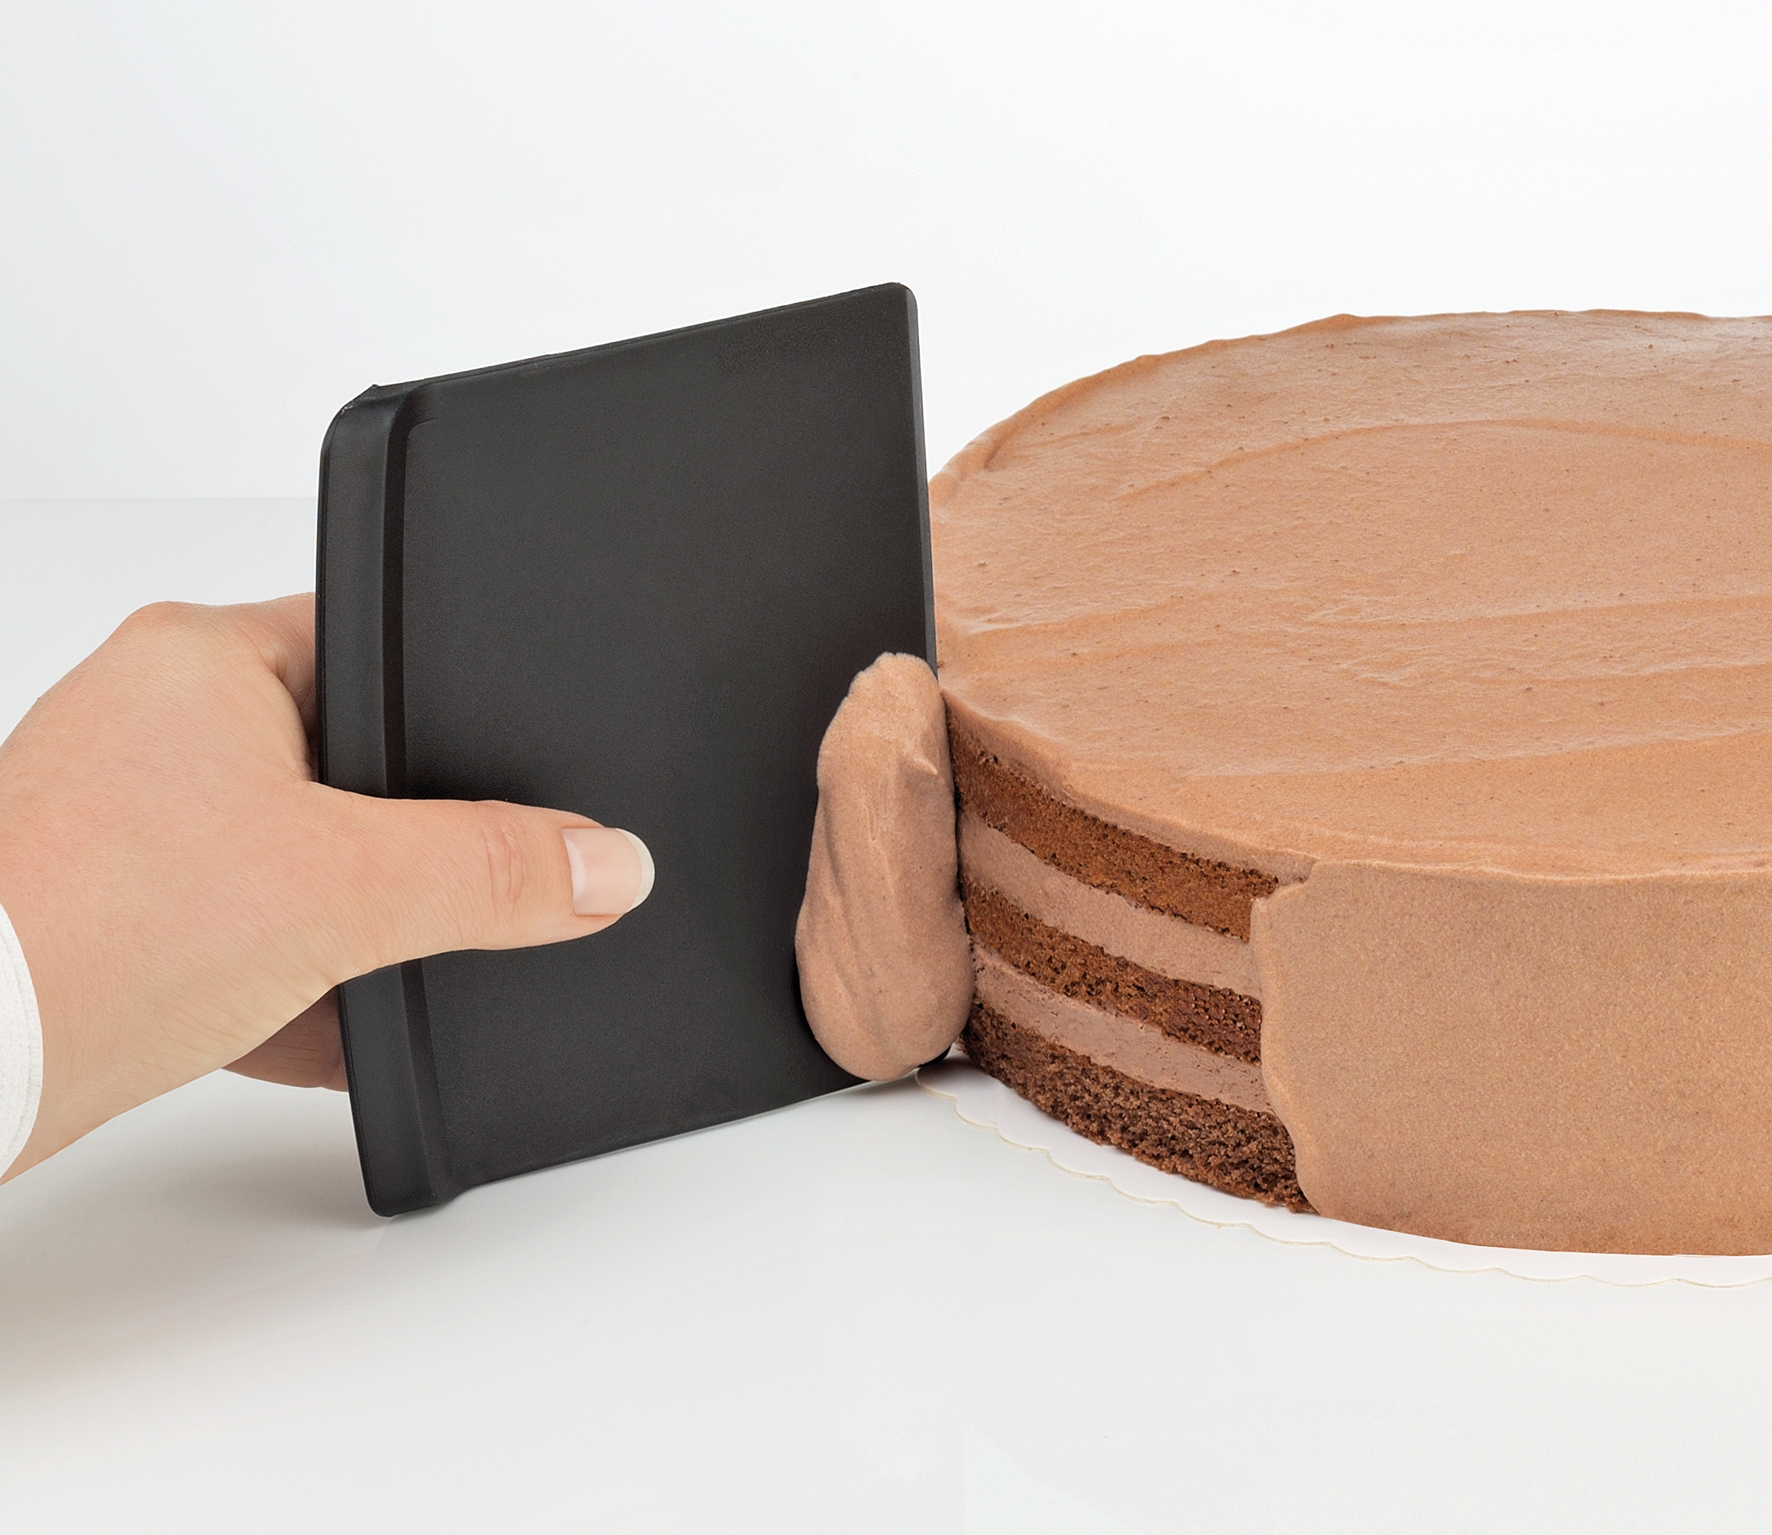 Teigschaber-Set 3-tlg. BAKE das Basic für jeden Bäcker + spülmaschinenfest platzsparende Aufbewahrung